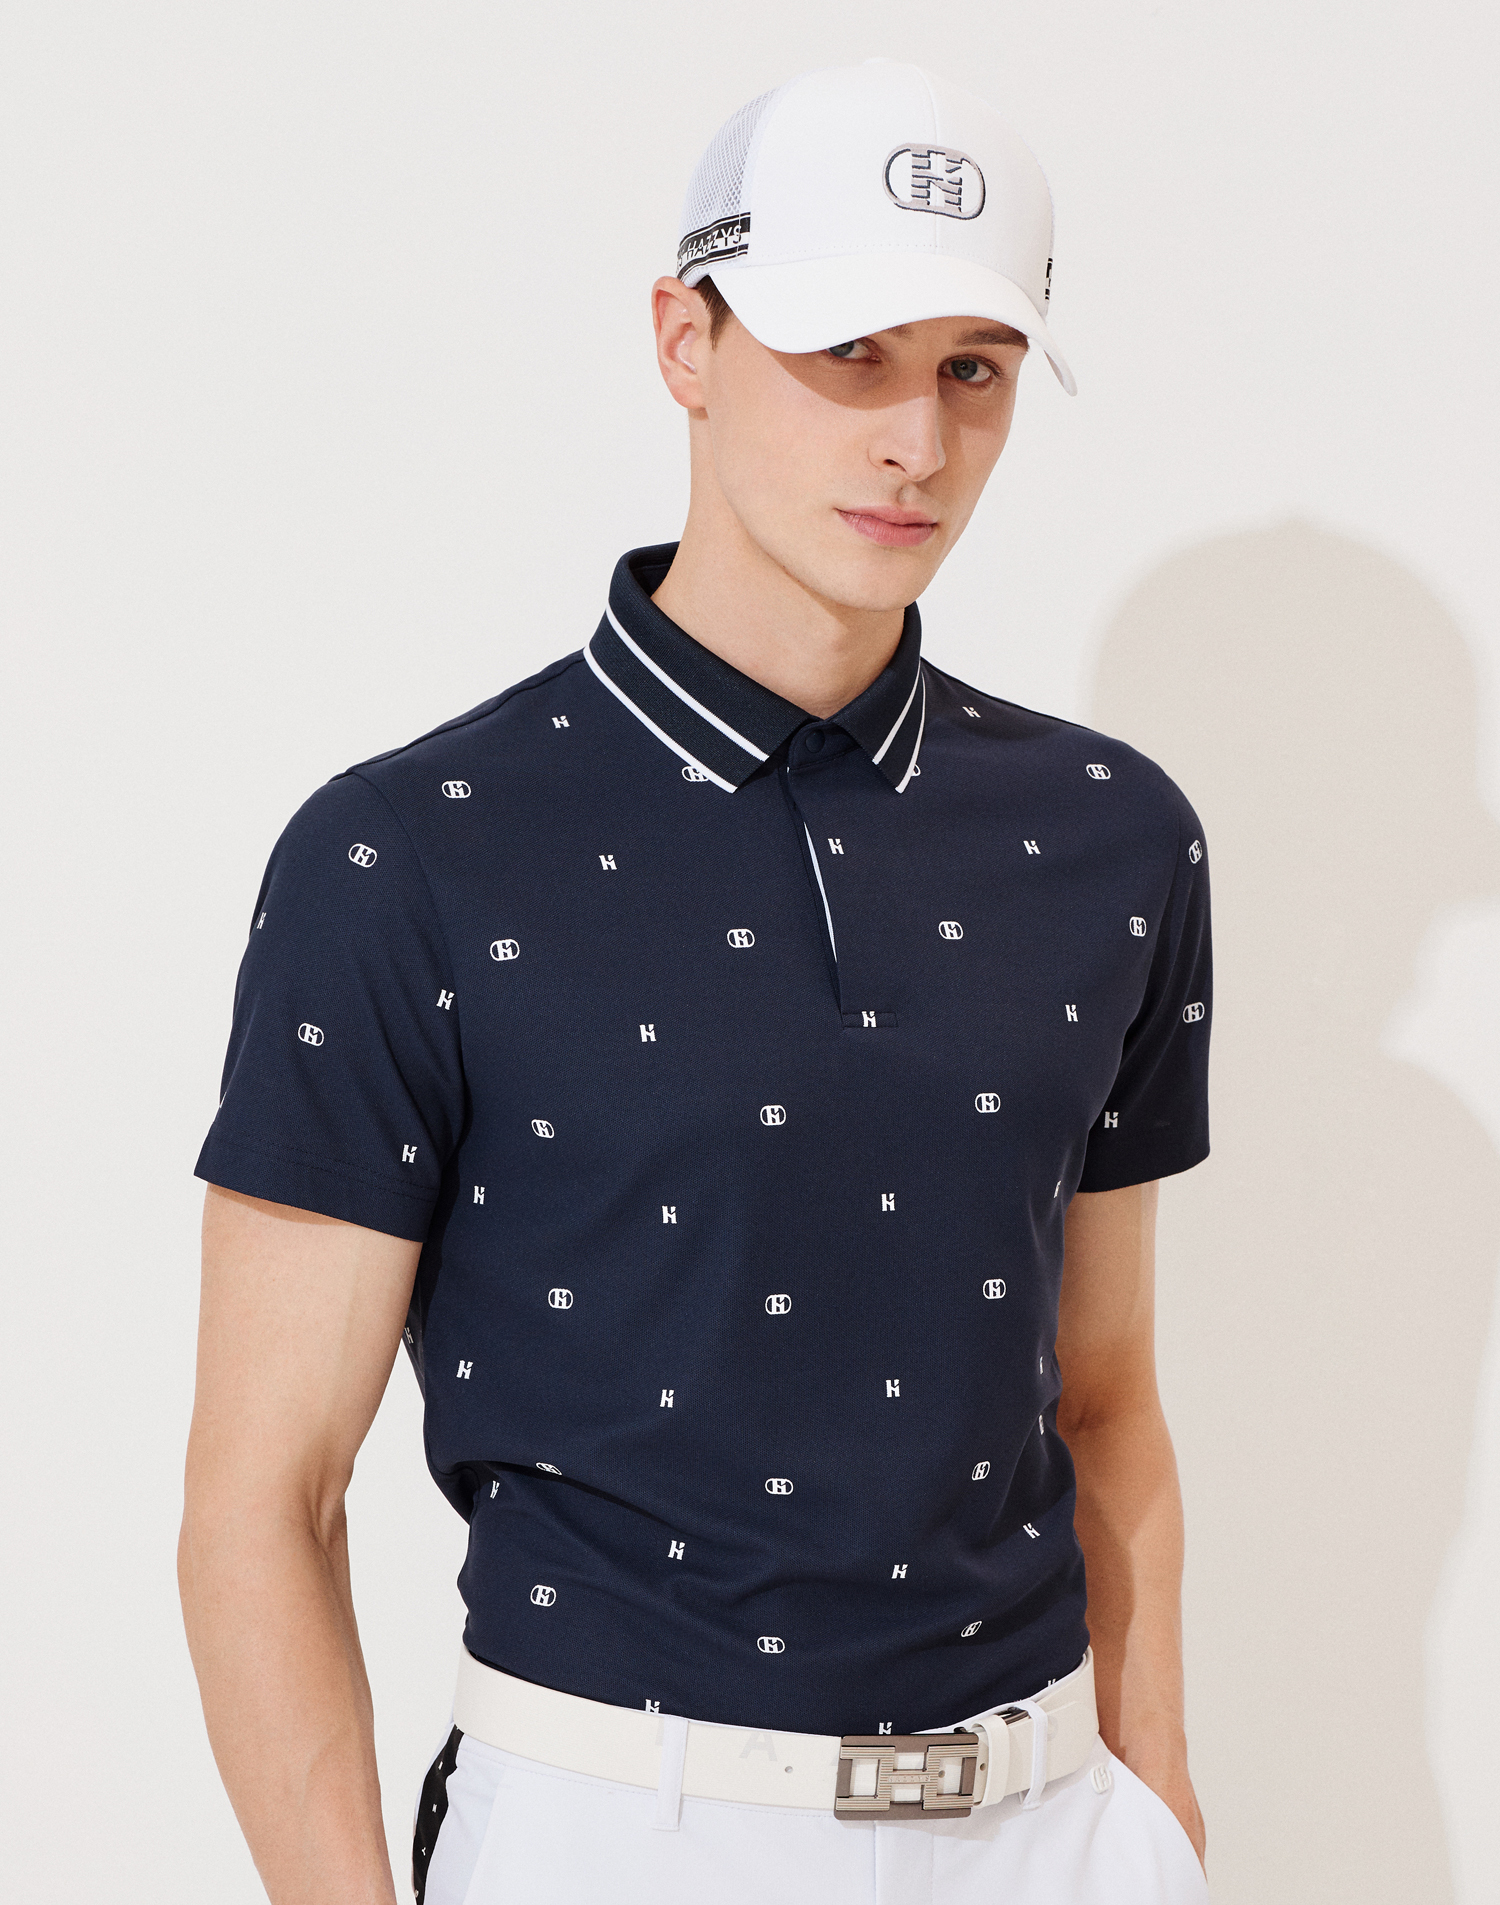 Thiết kế áo golf nam đa dạng, thể hiện phong cách